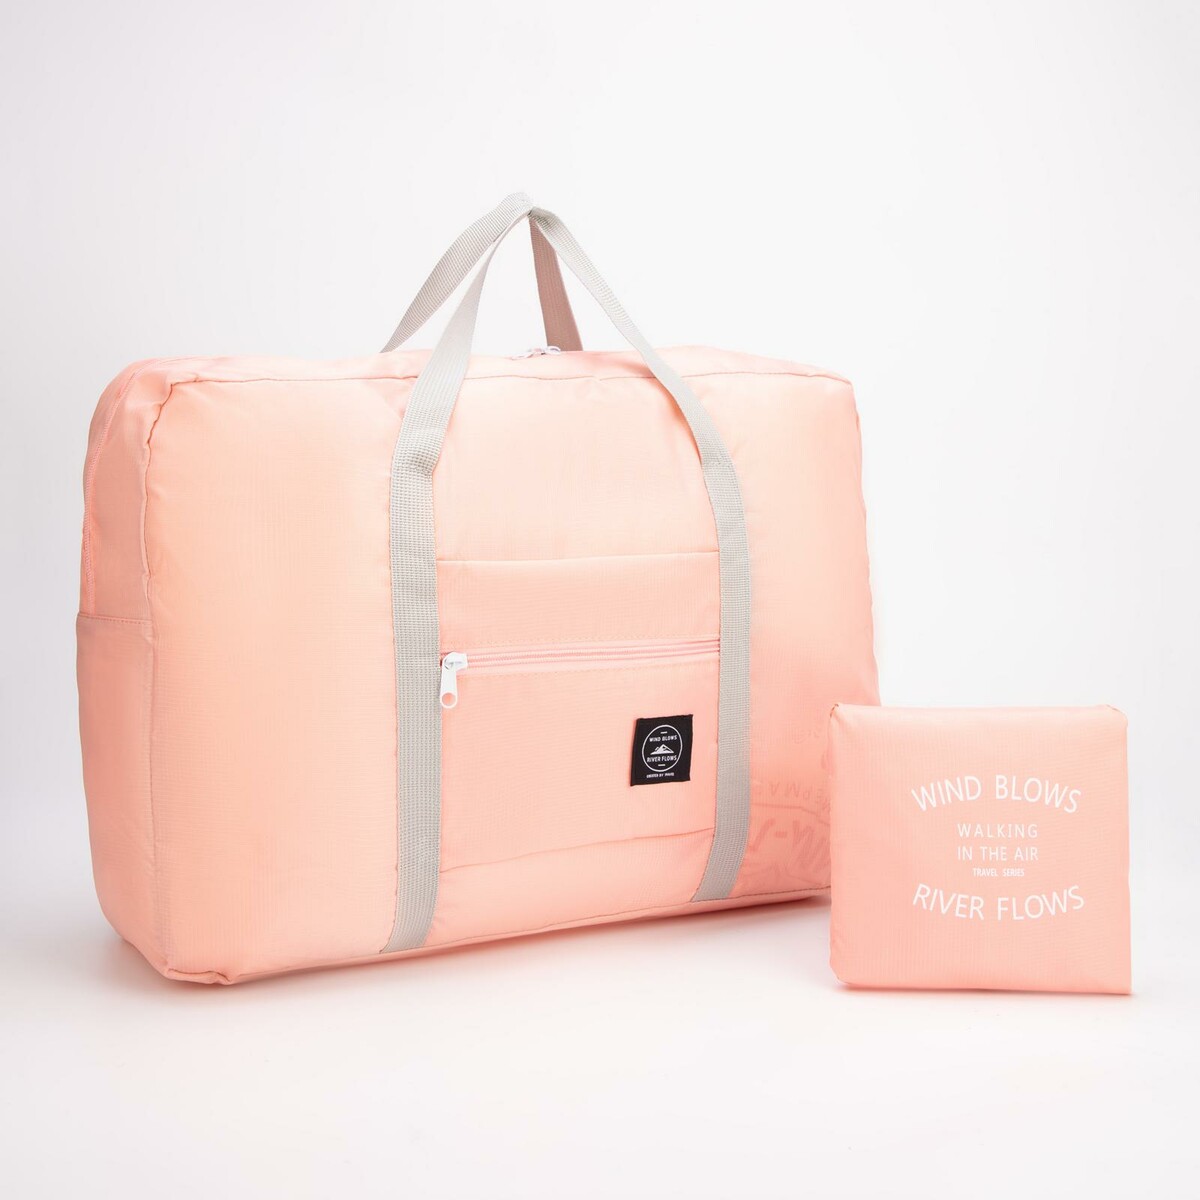 Сумка дорожная, складная, отдел на молнии, держатель для чемодана, наружный карман, цвет розовый сумка дорожная складная в косметичку отдел на молнии держатель для чемодана наружный карман розовый